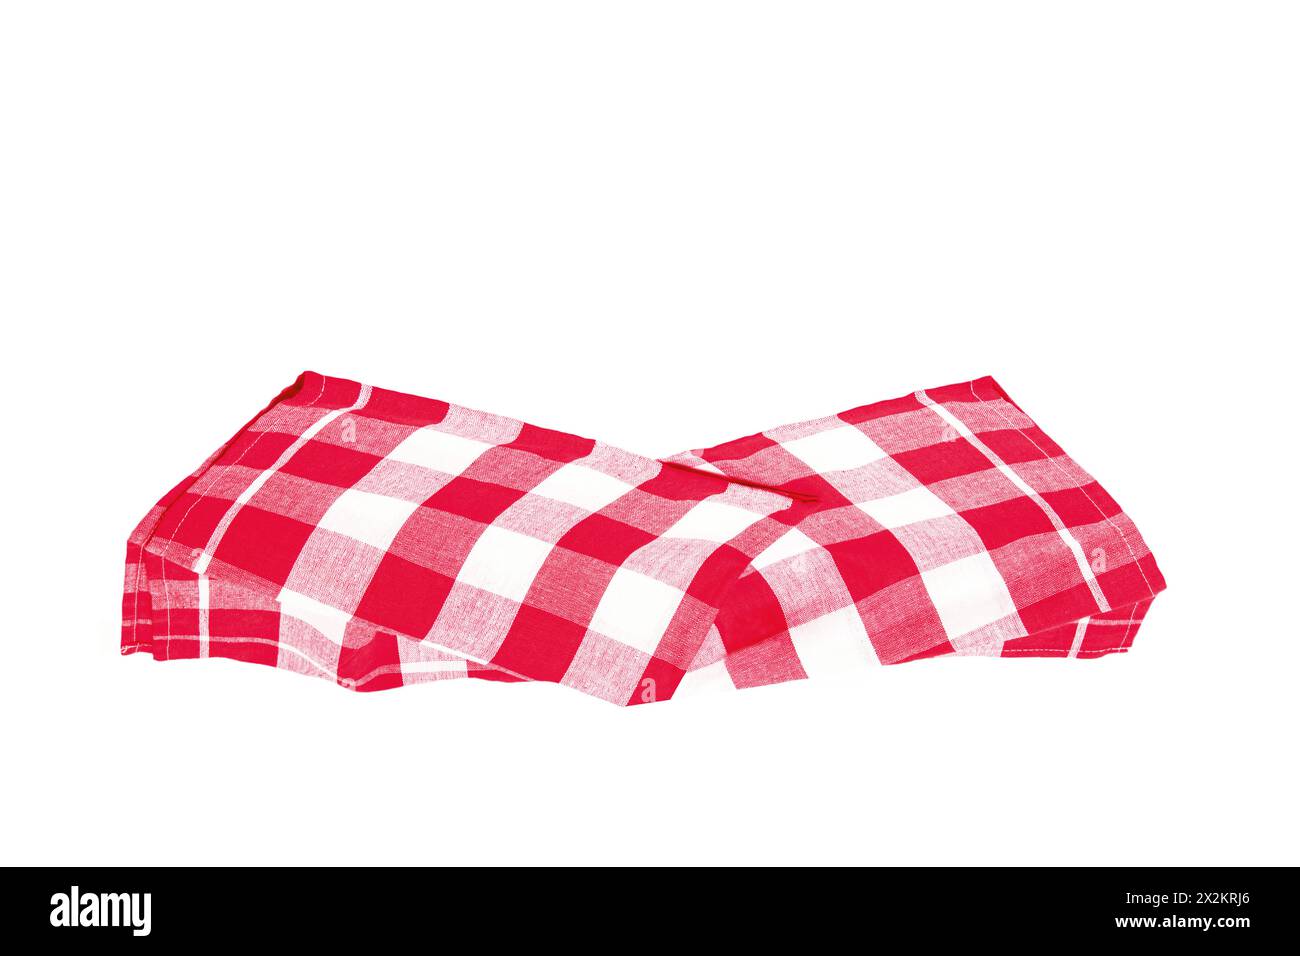 Nahaufnahme einer rot-weiß karierten Serviette oder Tischdecke, isoliert auf weißem Hintergrund. Küchenzubehör. Draufsicht. Stockfoto